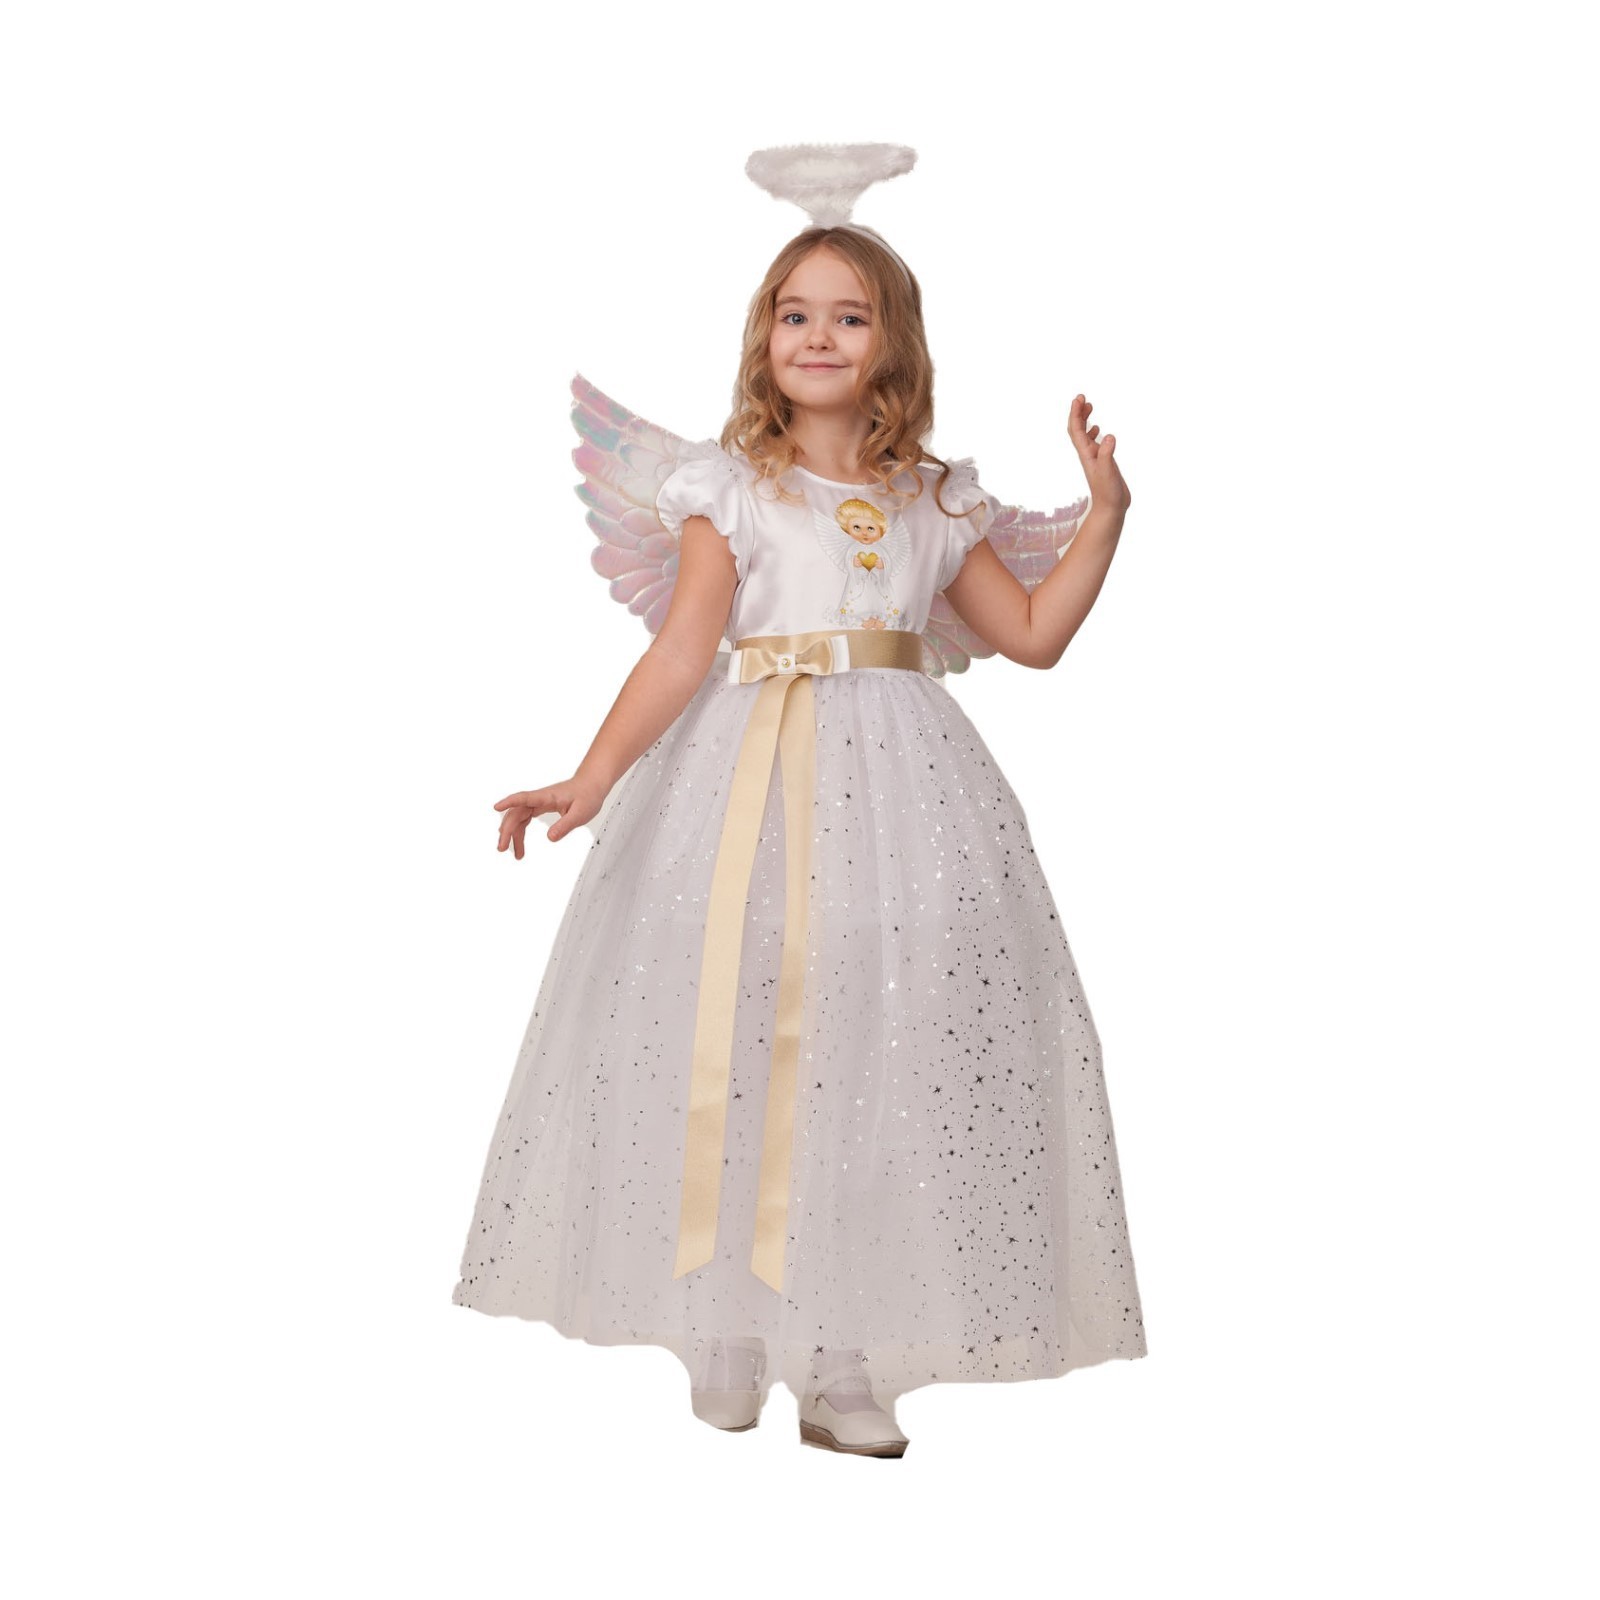 Карнавальный костюм Батик, Ангел, 7483883, рост 110 костюм карнавальный батик принцесса ариэль принт детский р 26 104 см